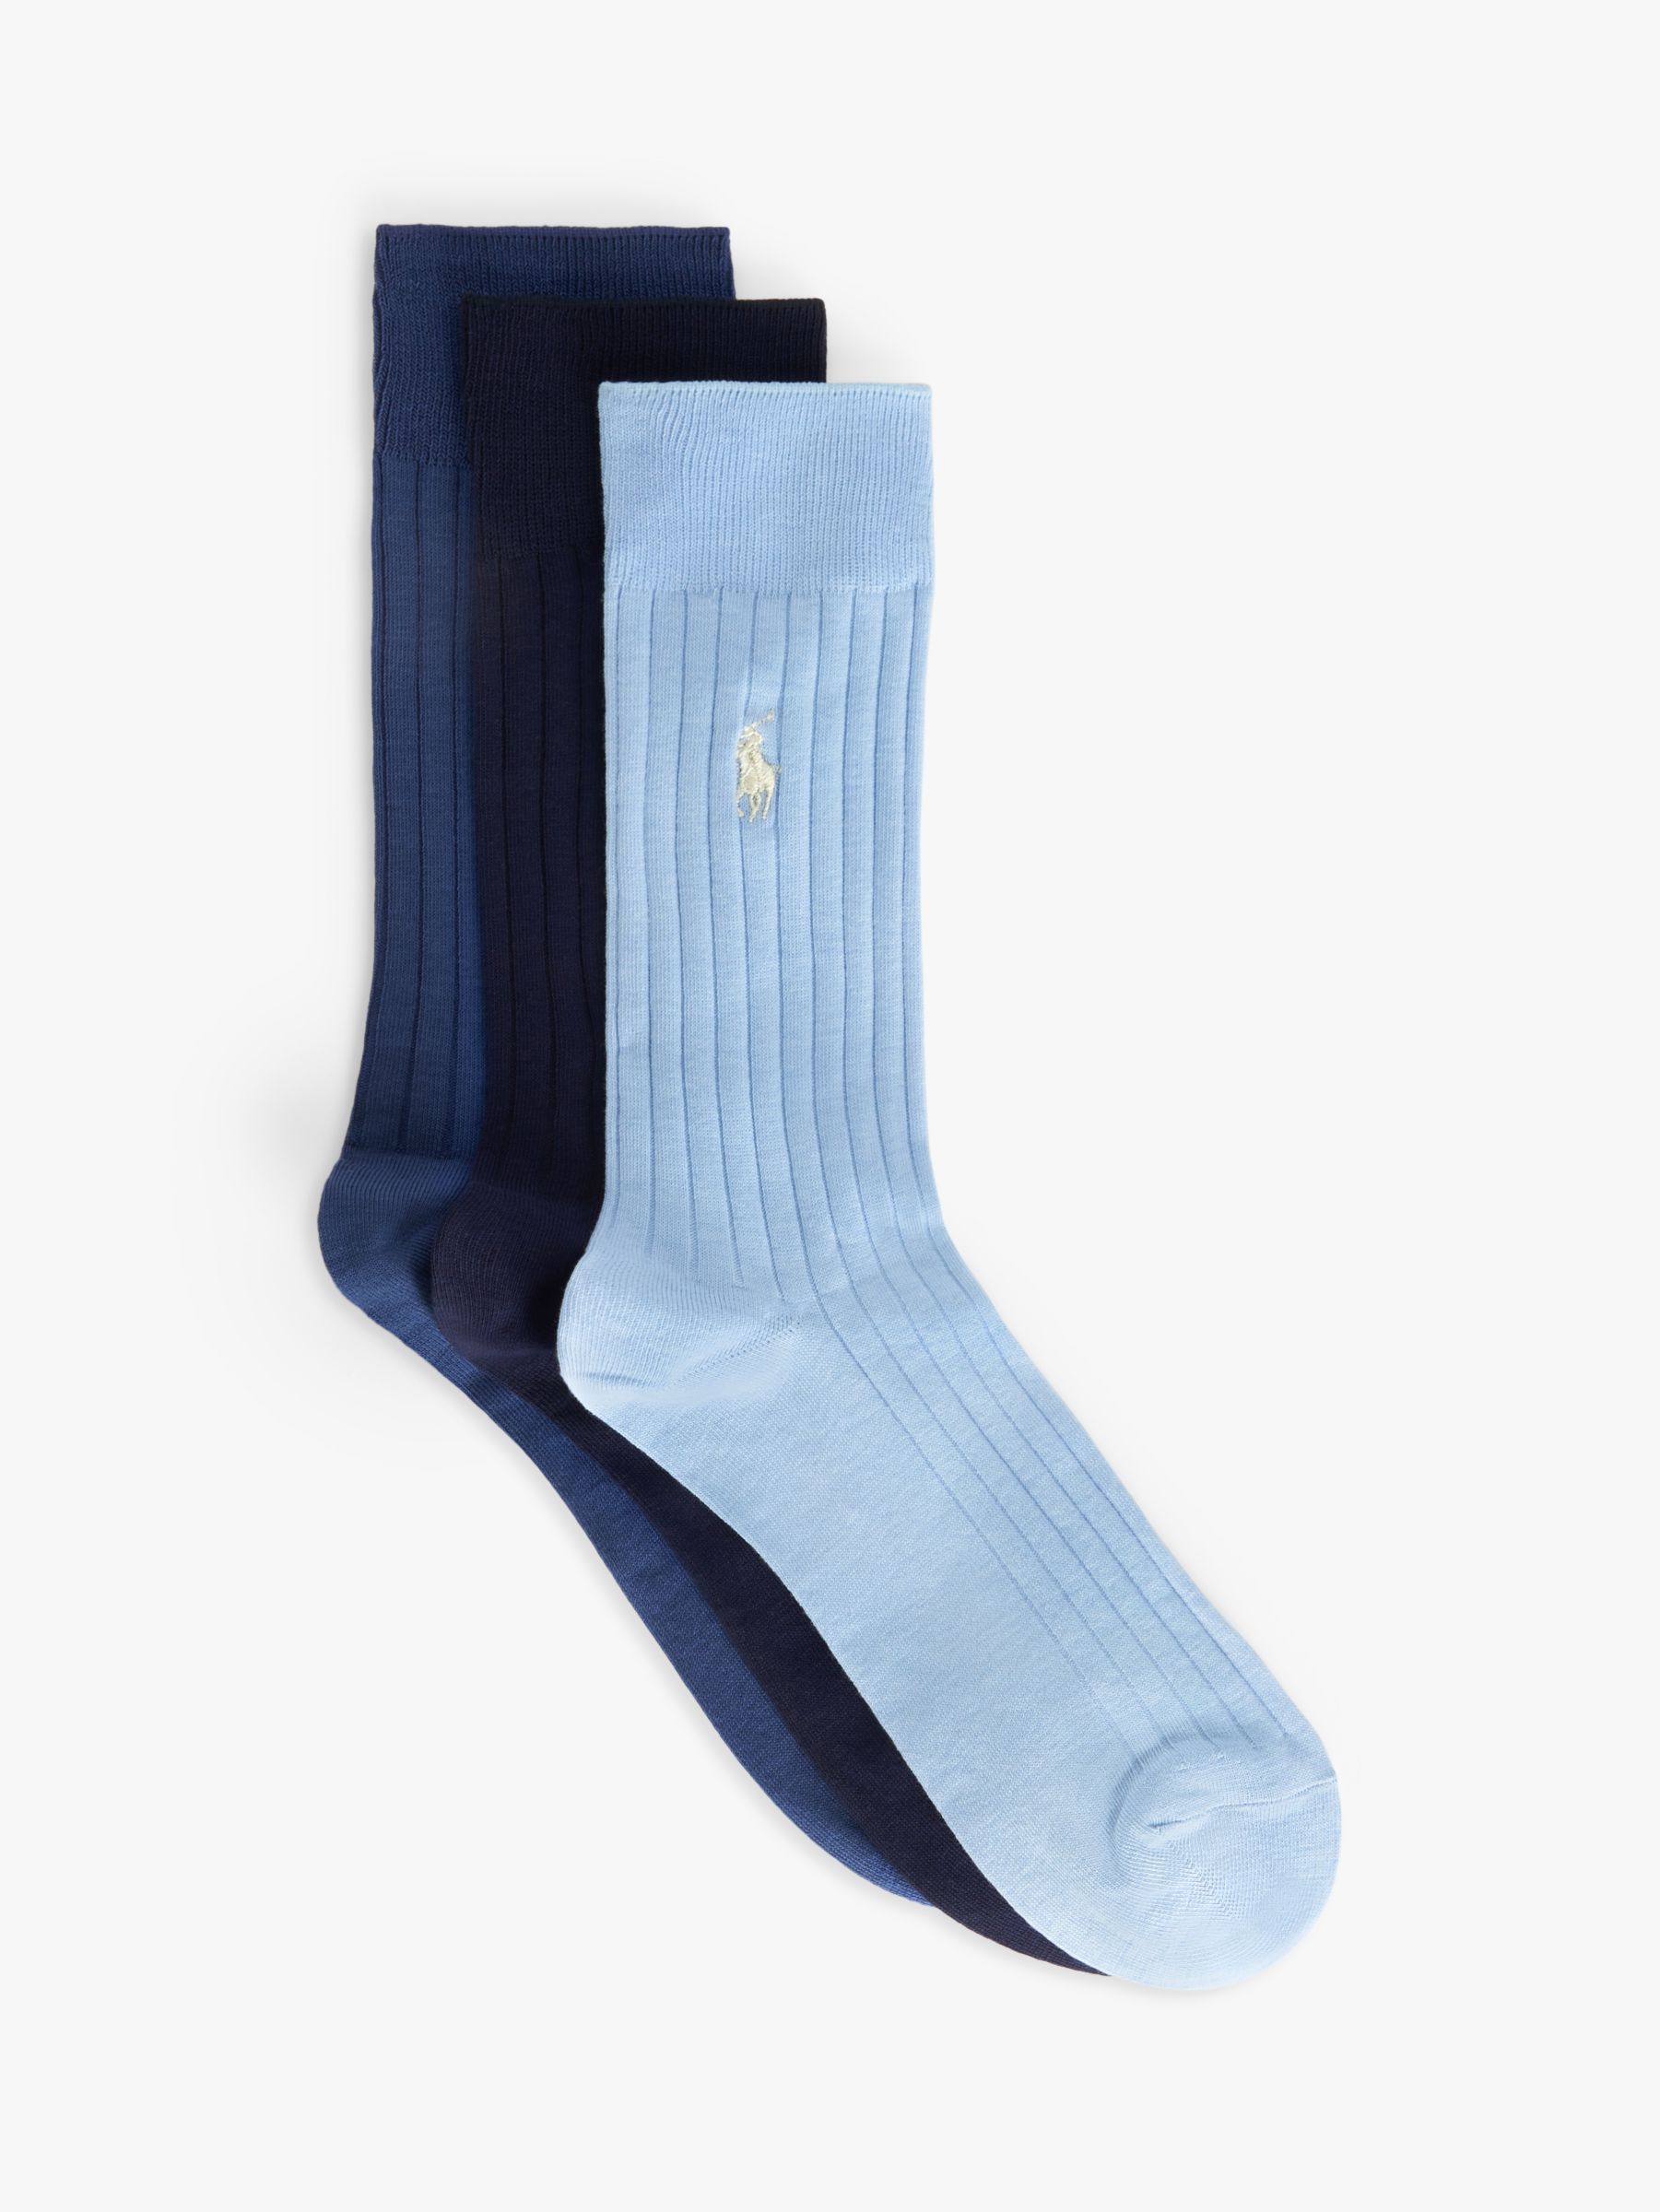 Ralph Lauren Egyptian Crew Socks, Pack of 3, Blue Assorted, S-M